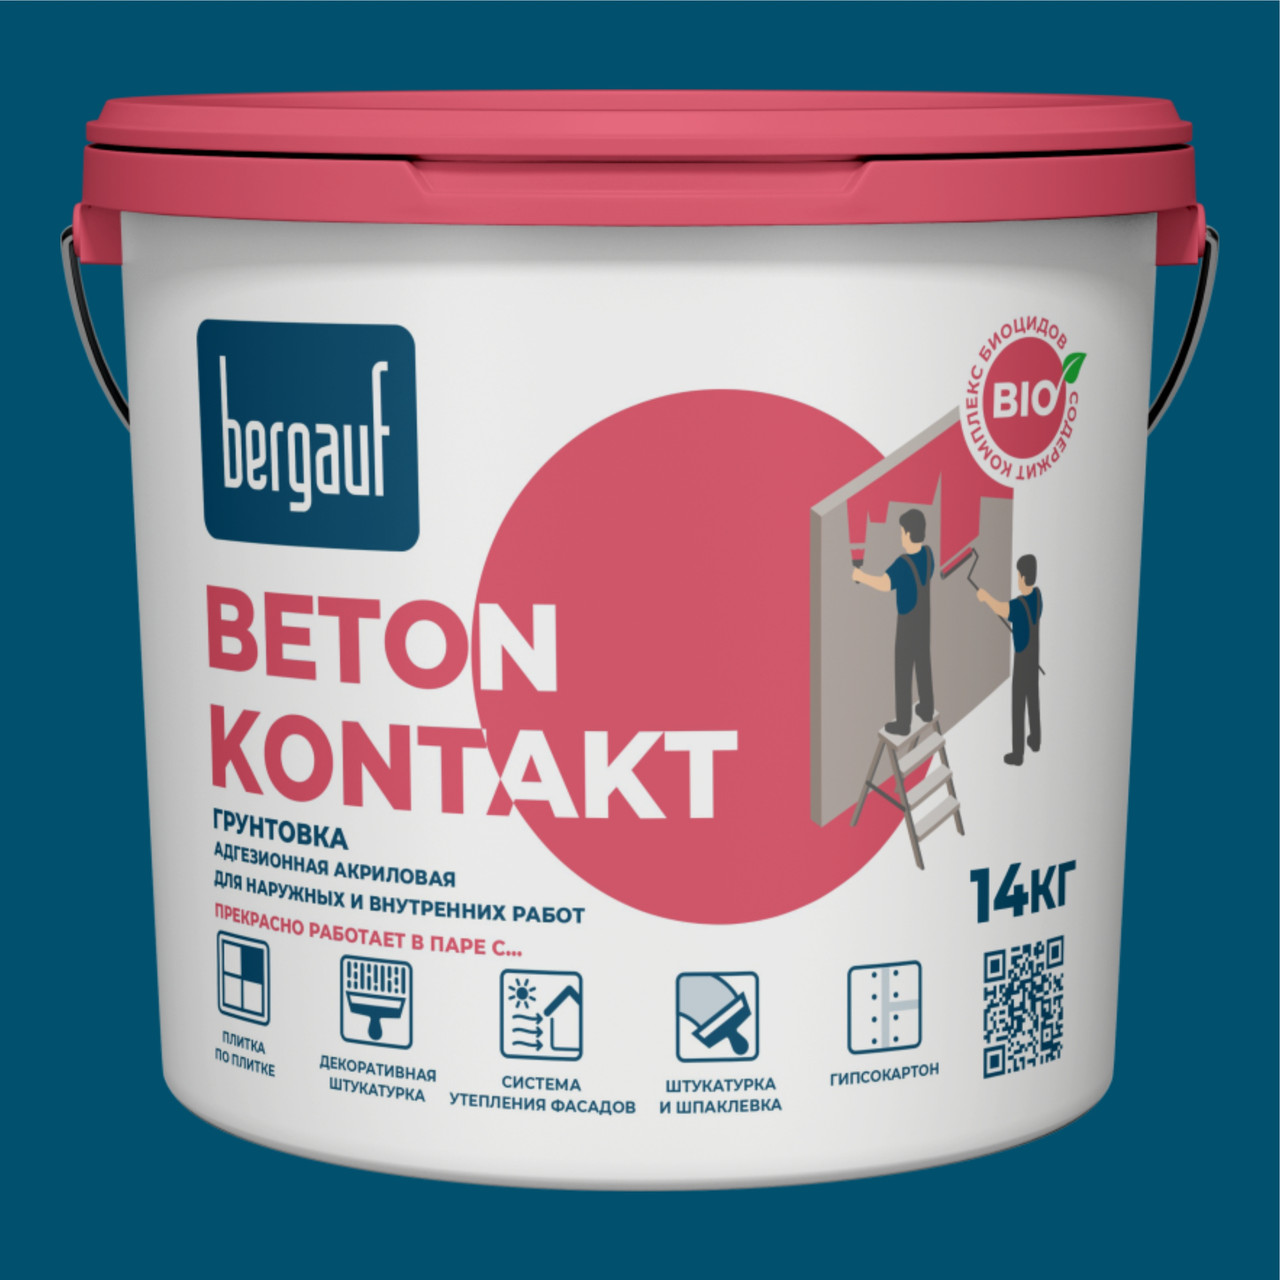 Bergauf, BETON KONTAKT, (Бетон Контакт) Сцепляющая (адгезионная) акриловая грунтовка, 14 кг, зима-лето